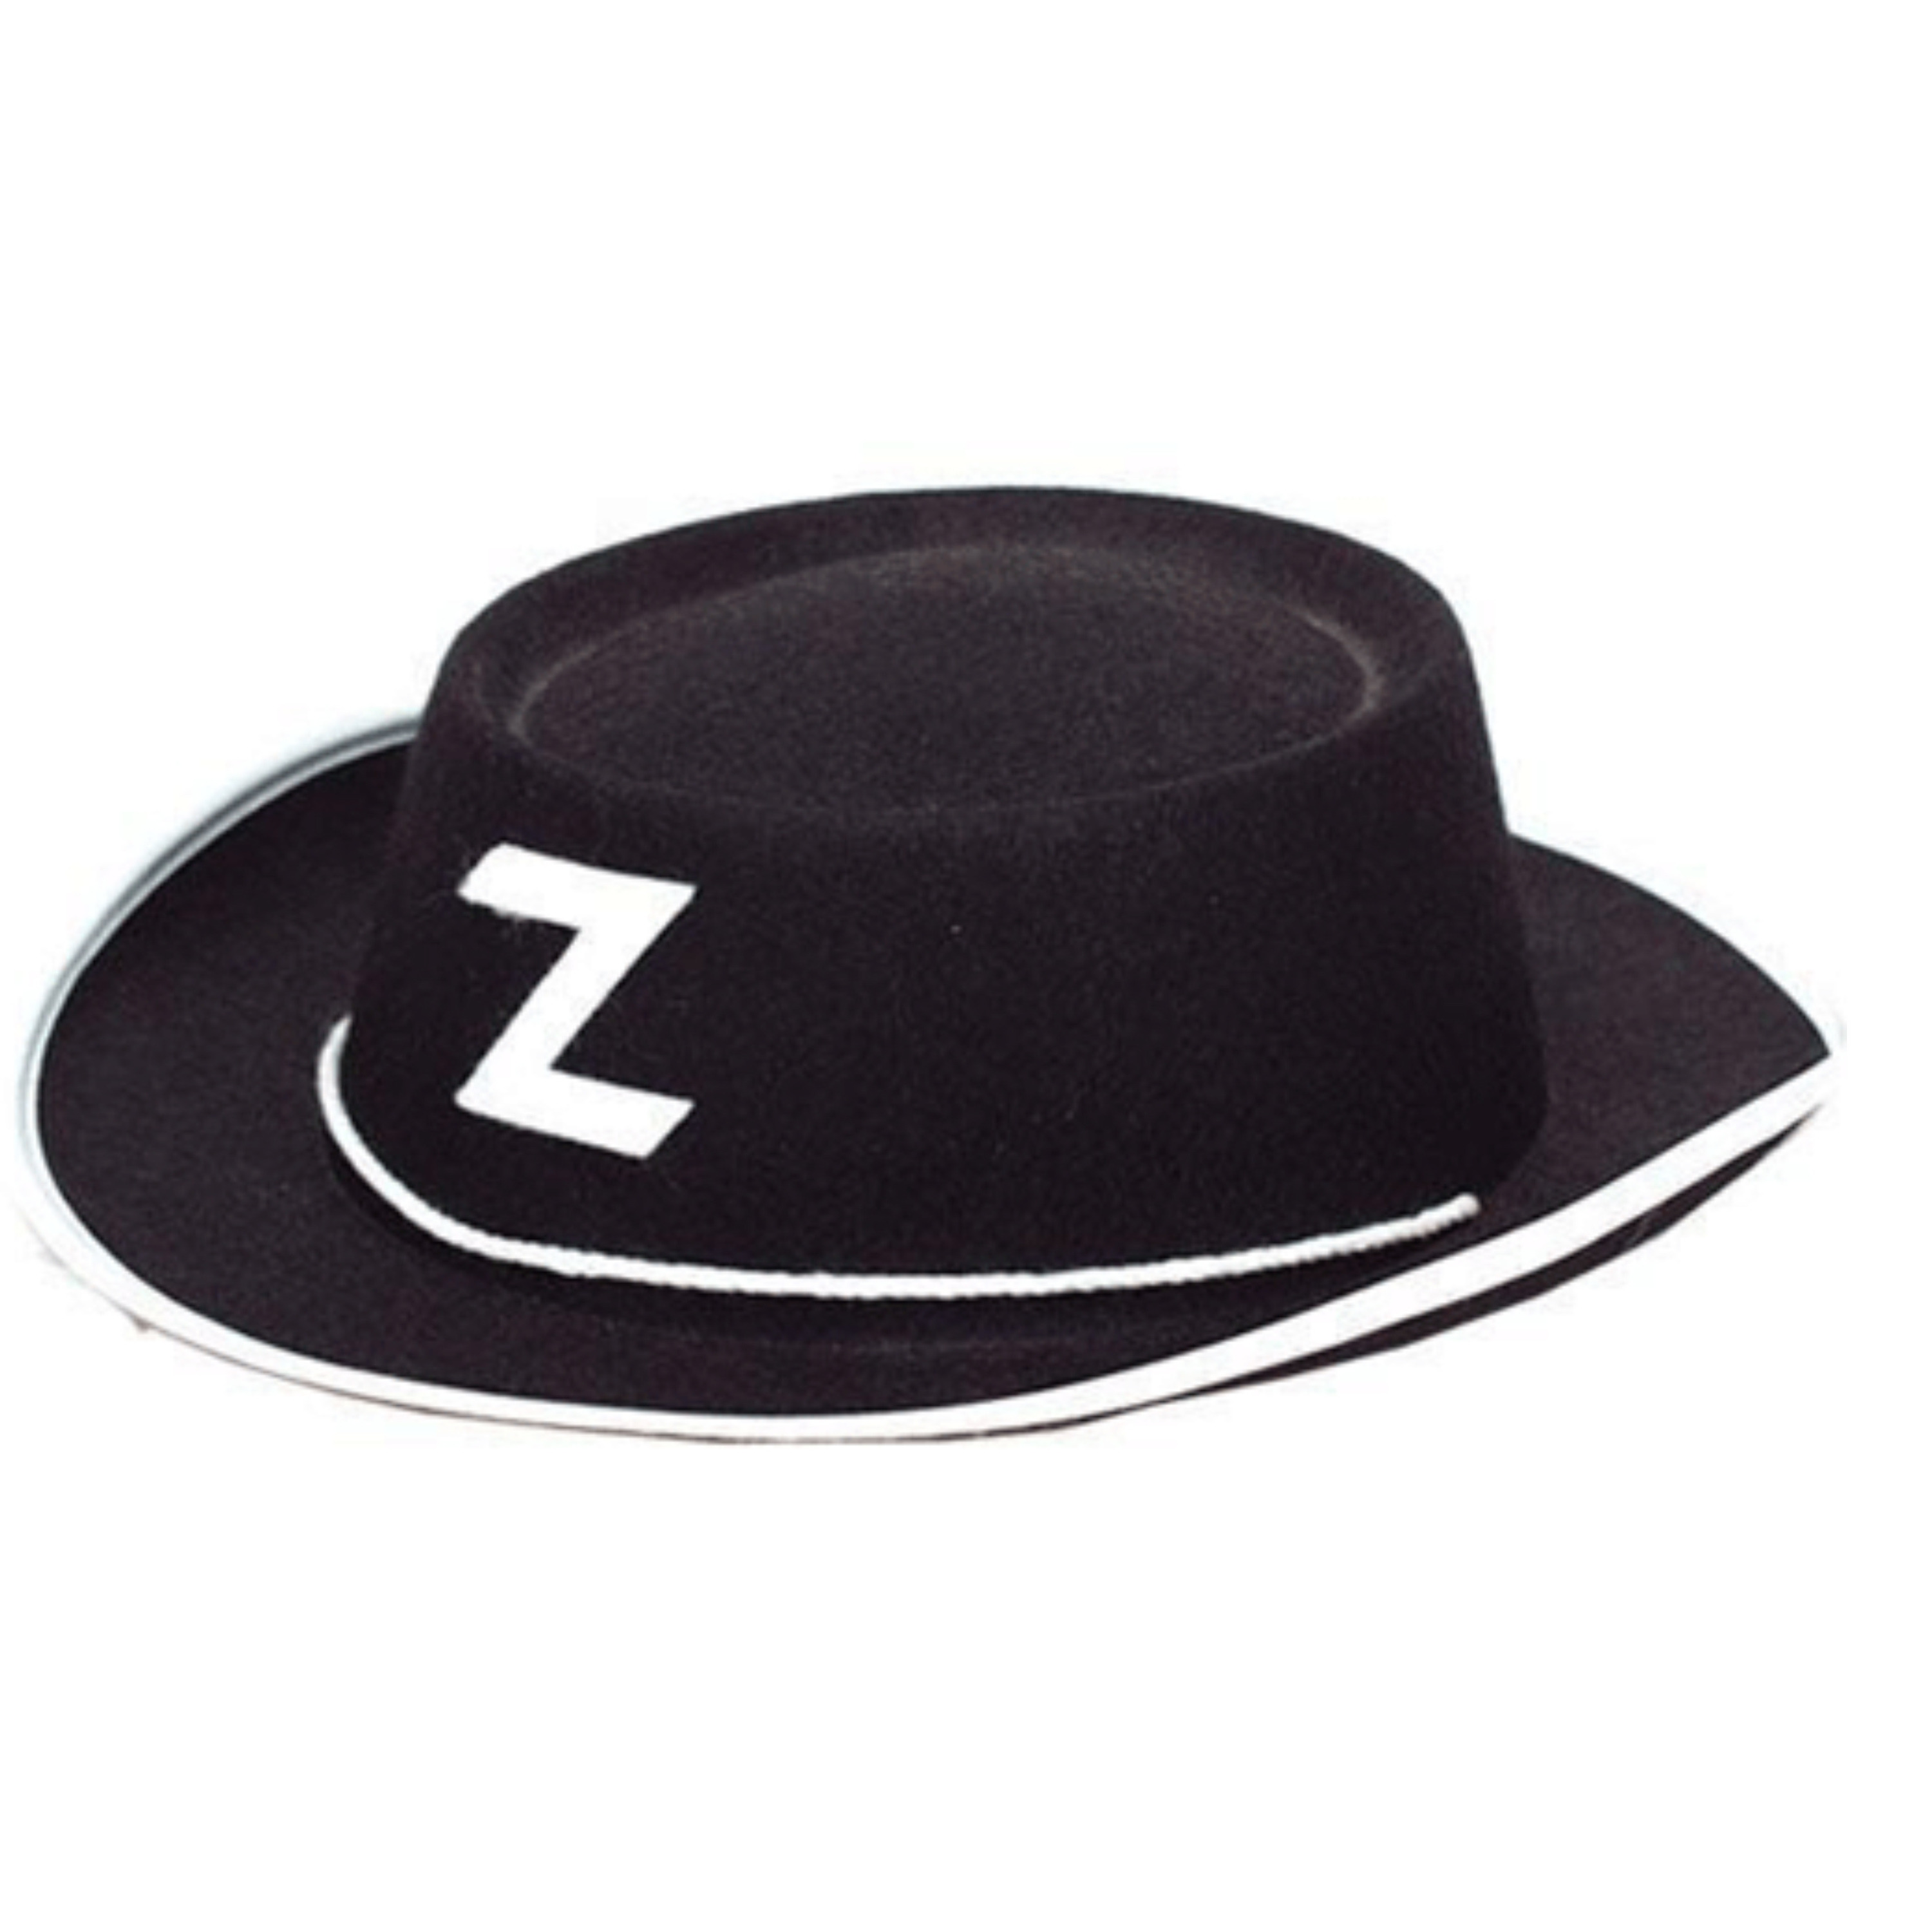 Verkleed Zorro hoedje zwart voor kinderen